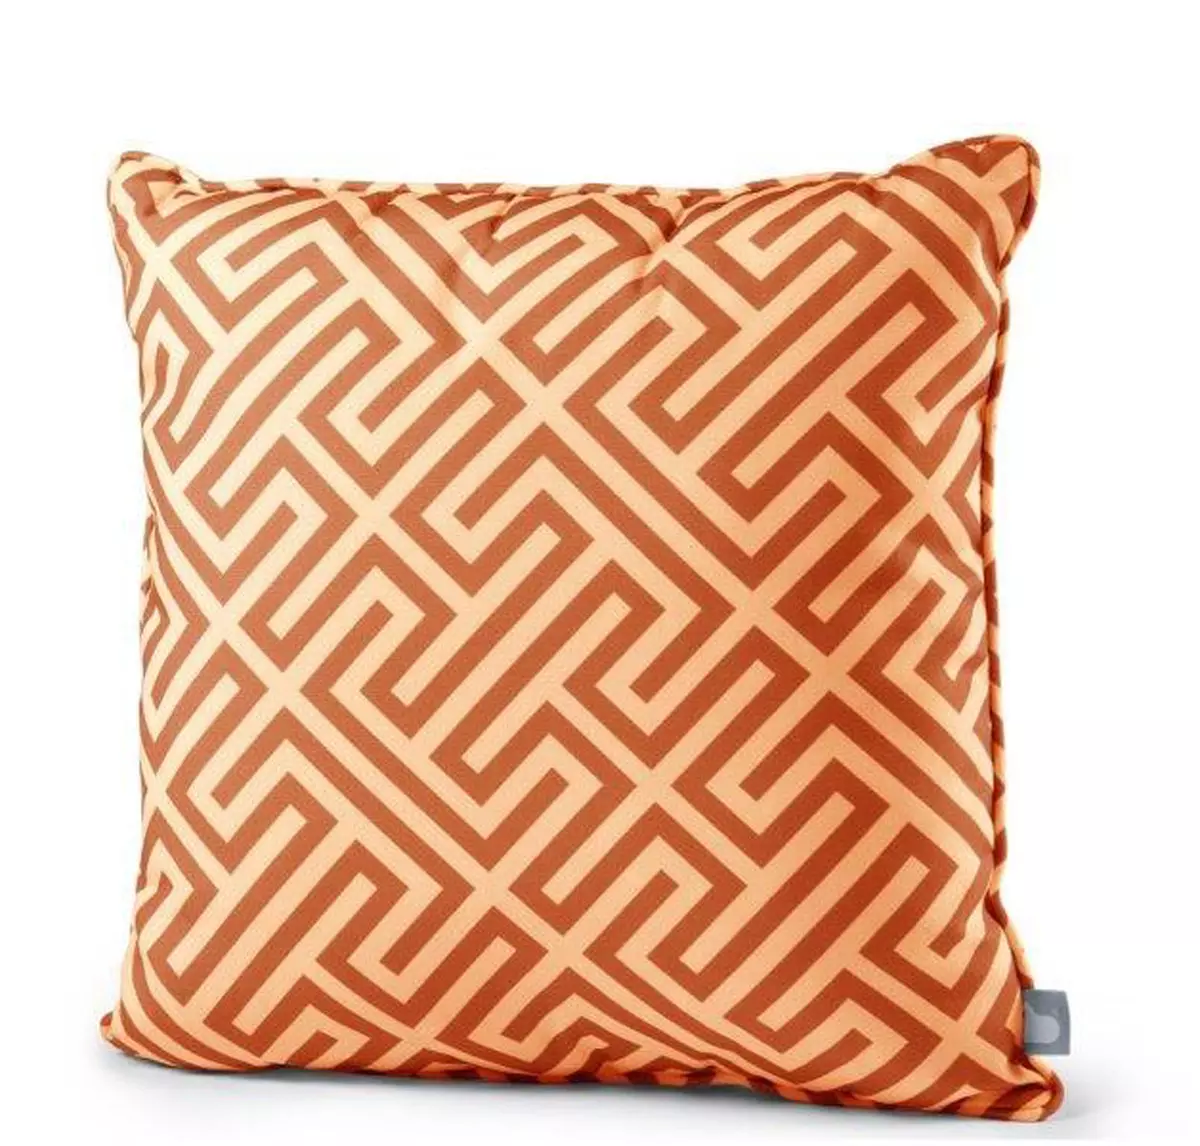 Splash-proof Cushion - Maze Orange